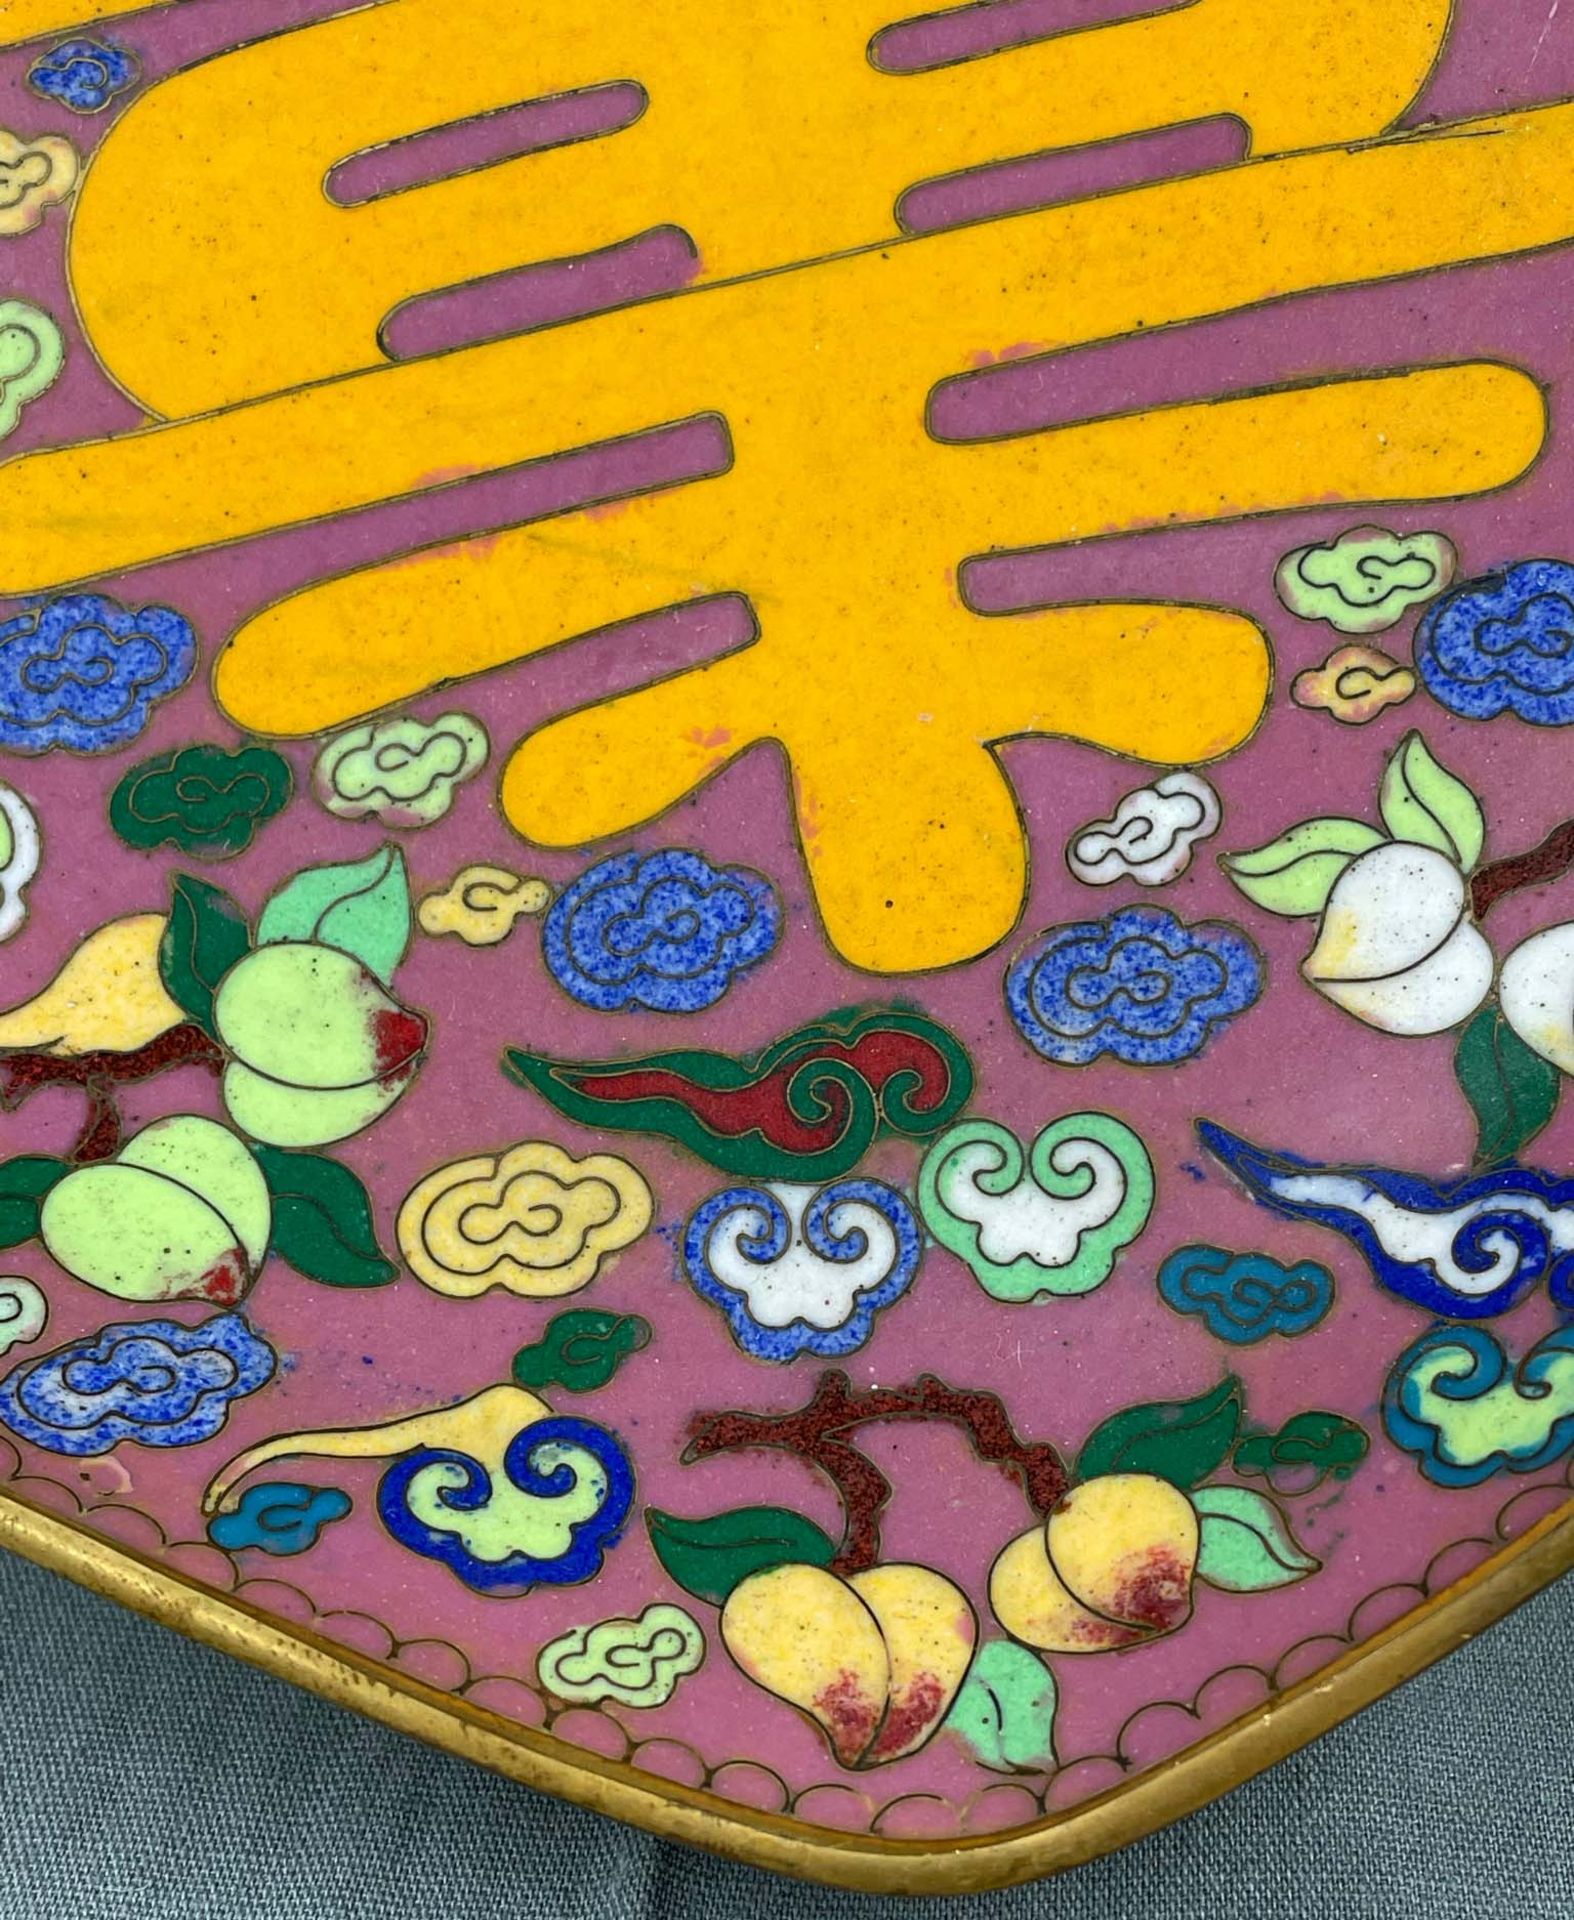 Fußschale. Cloisonné. Wohl China, Japan antik. - Image 6 of 15